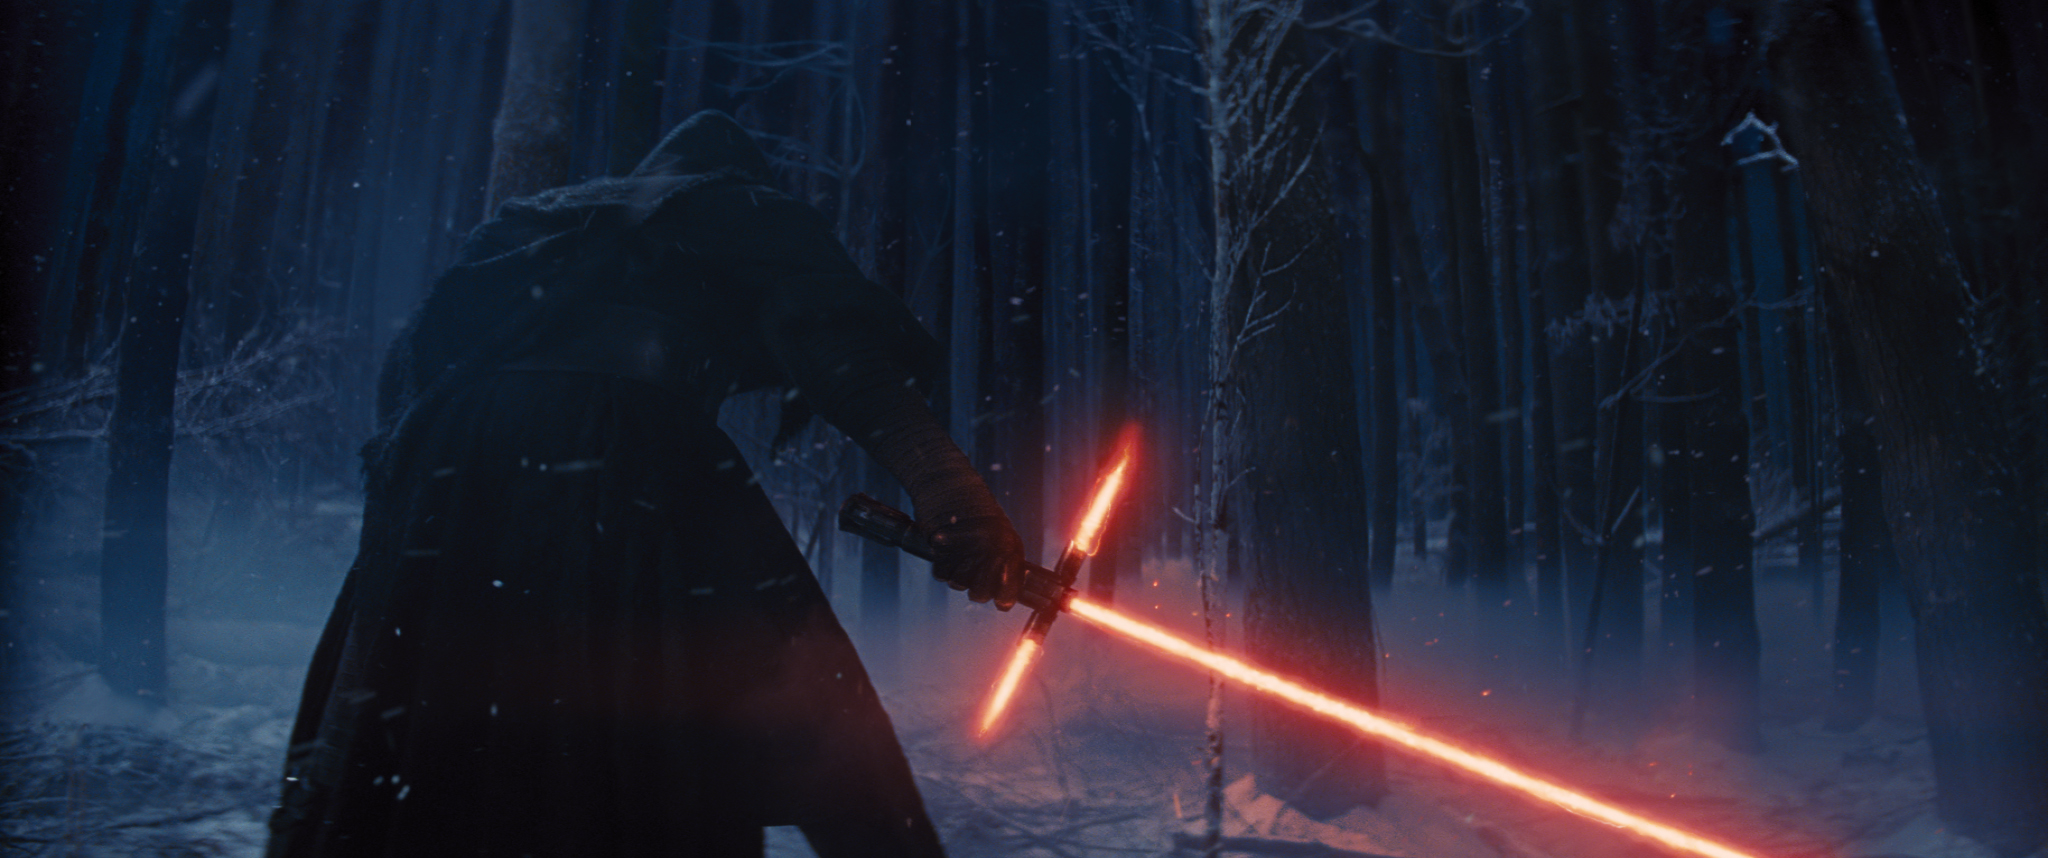 Nieuwe beelden Star Wars The Force Awakens